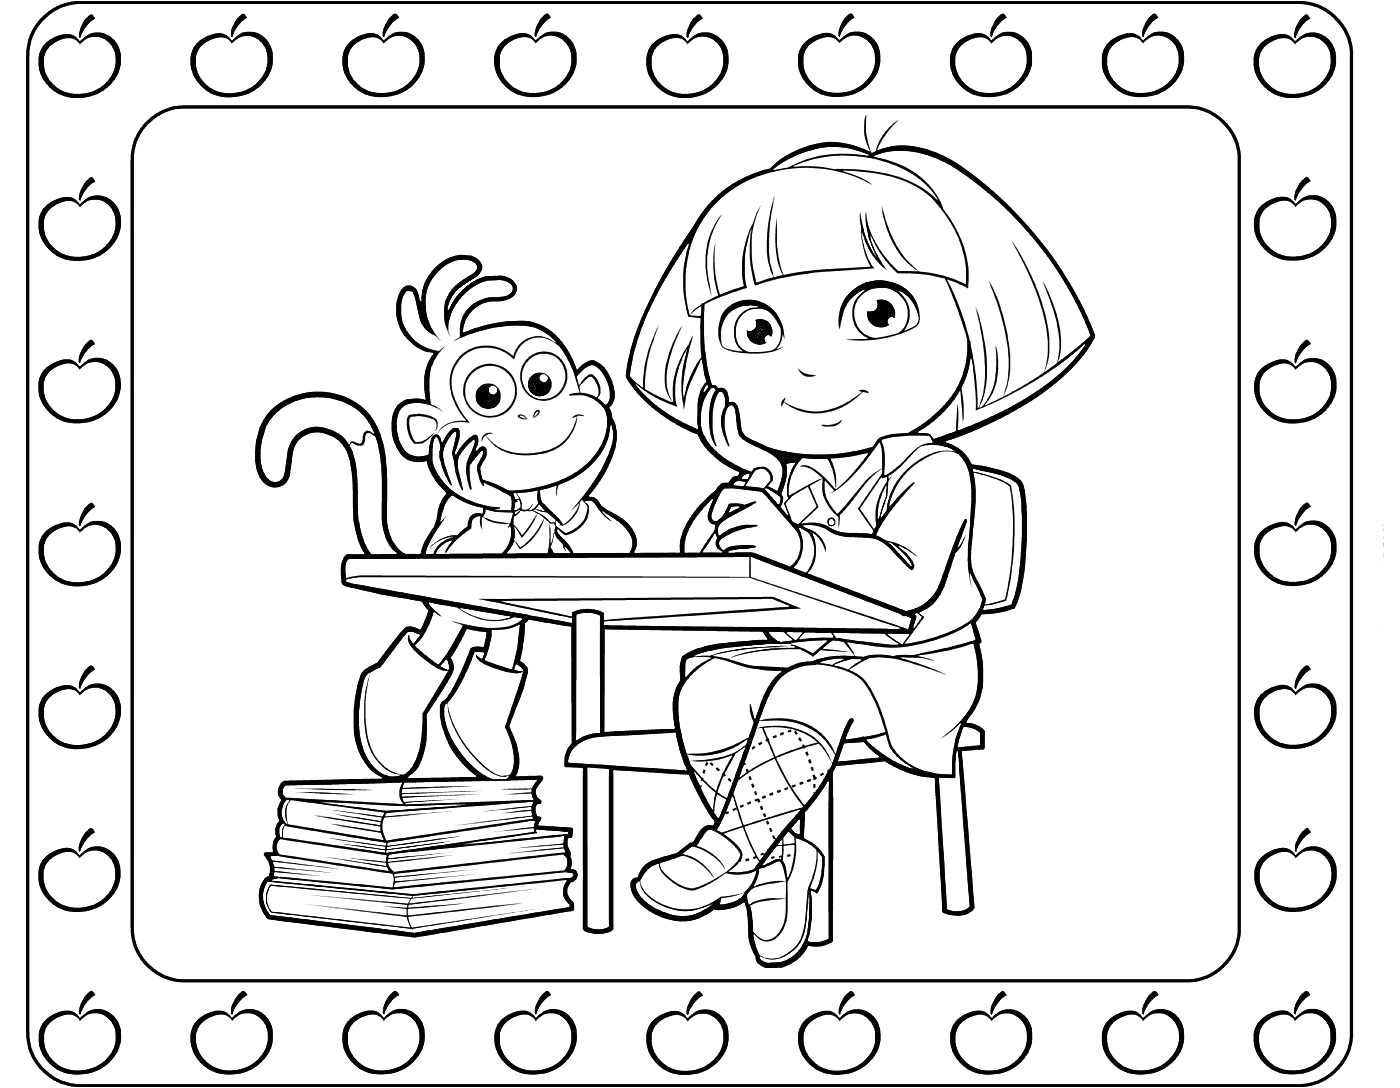 Раскраска Девочка с обезьянкой за партой, на фоне рамки с яблоками